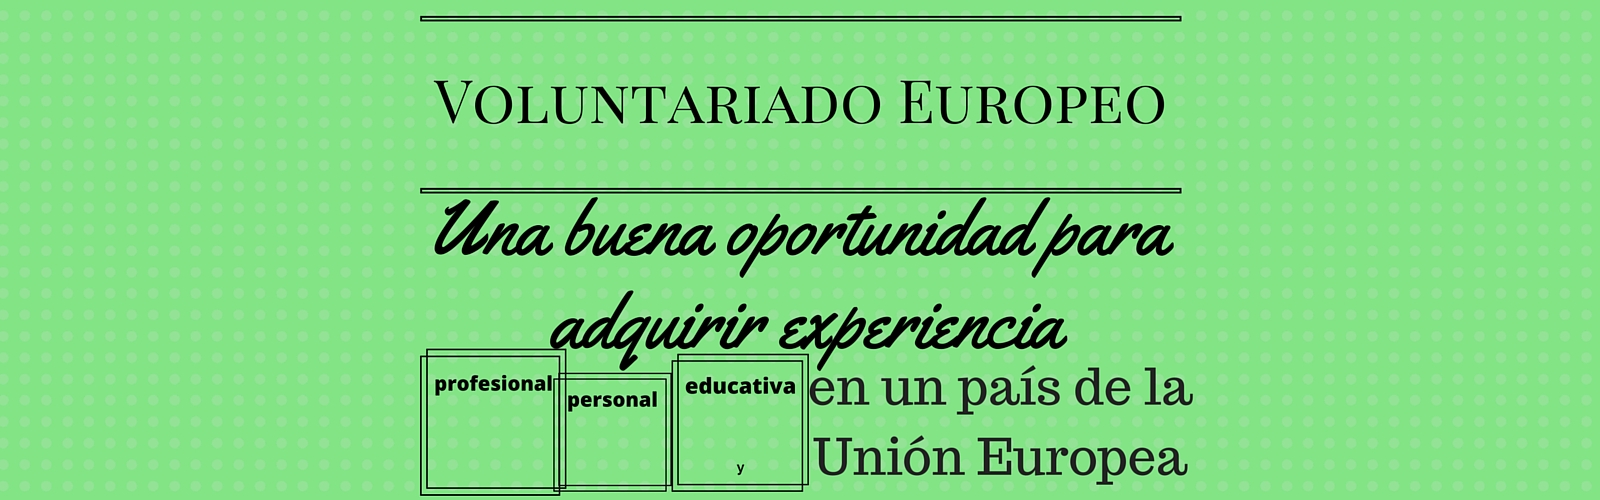 Voluntariado Europeo. Una buena oportunidad para adquirir experiencia profesional, personal y educativa en un país de la Unión Europea